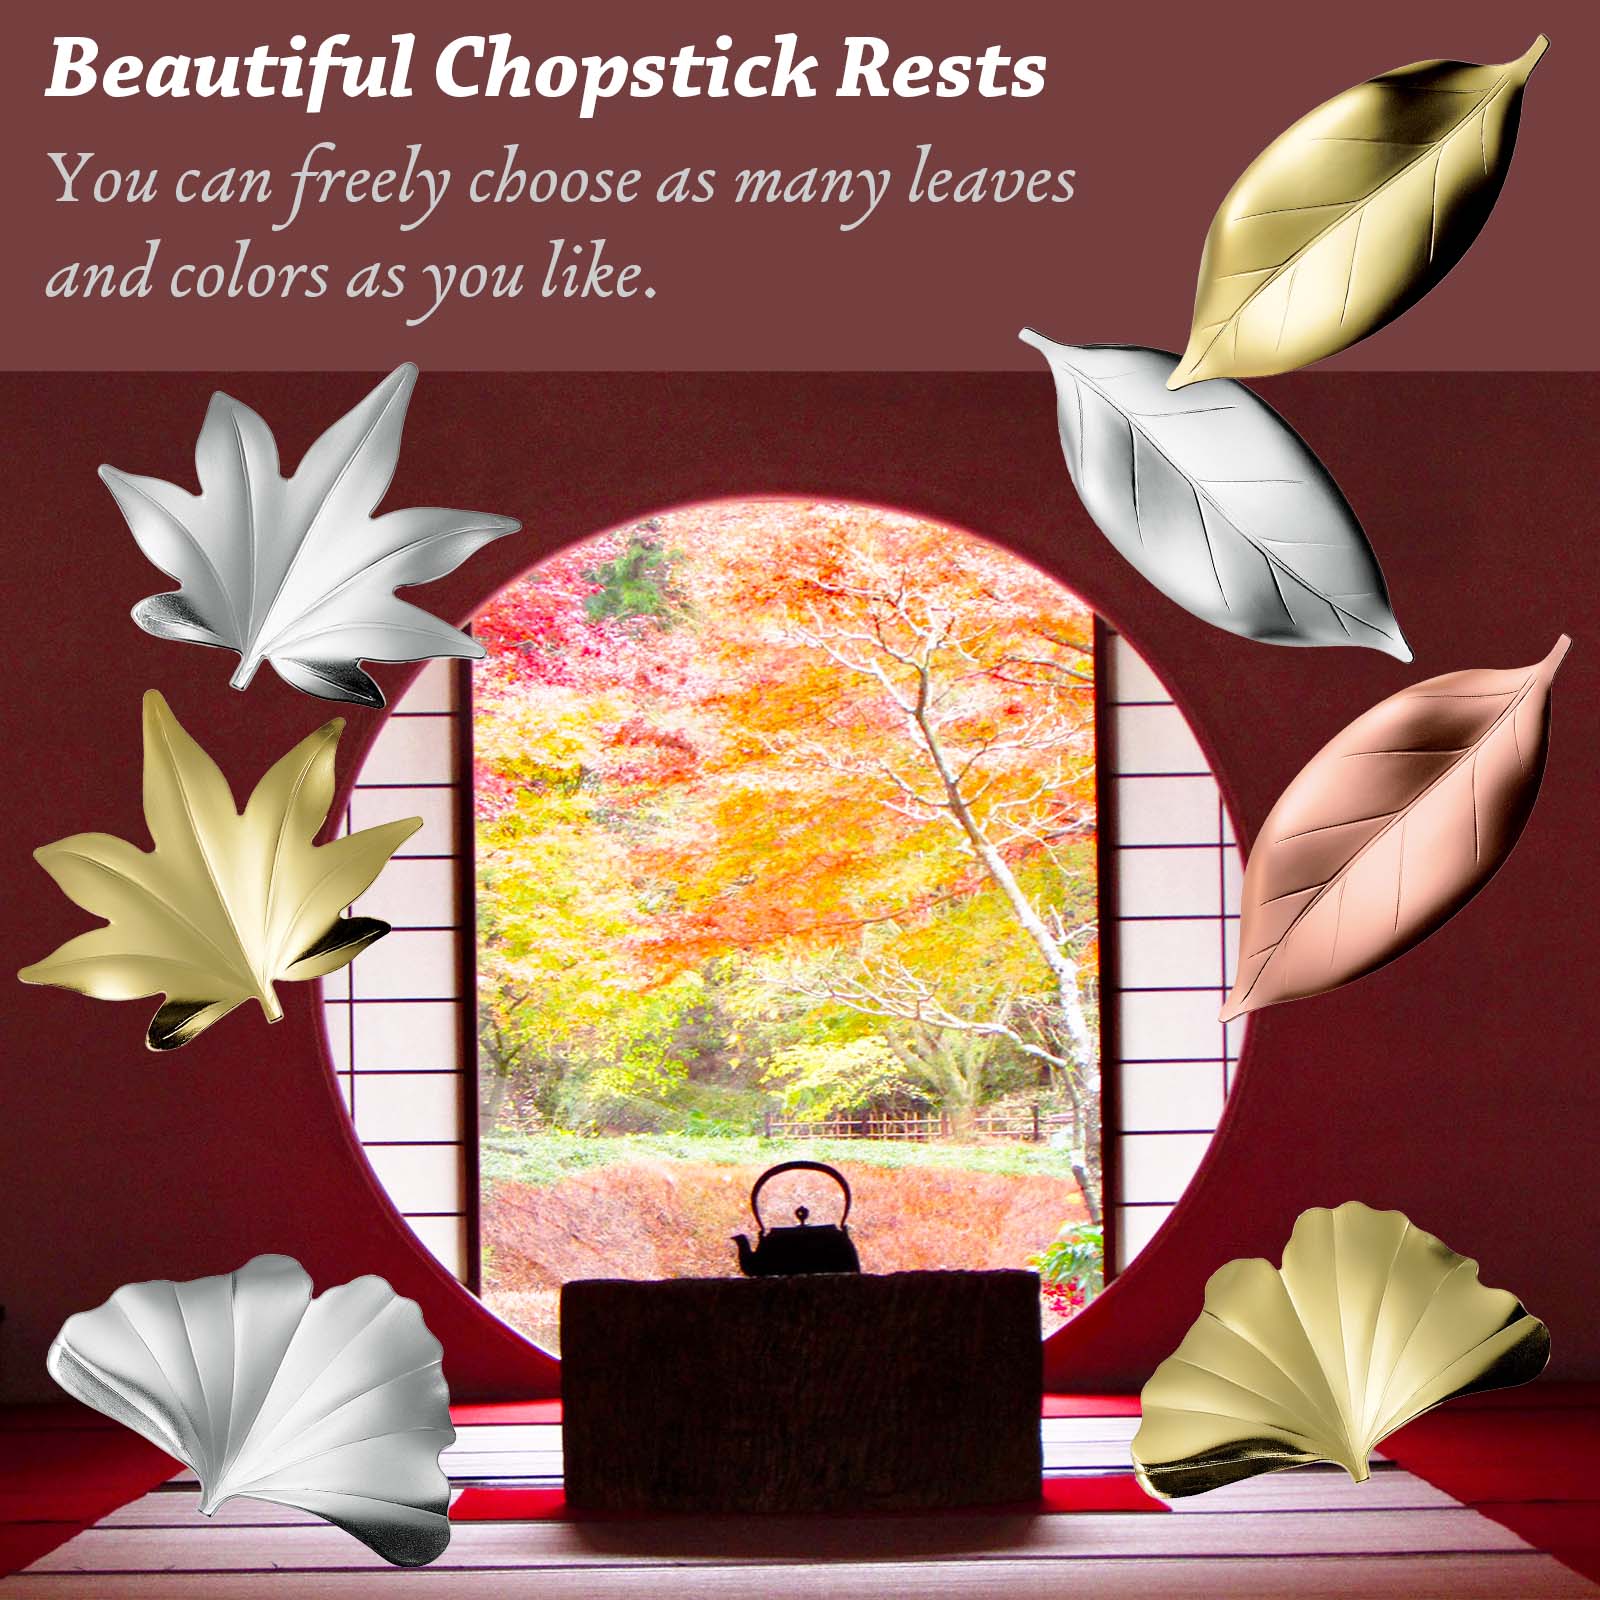 Japanese Chopstick Rest Holder Stainless Steel Leaf Design Cutlery Rest